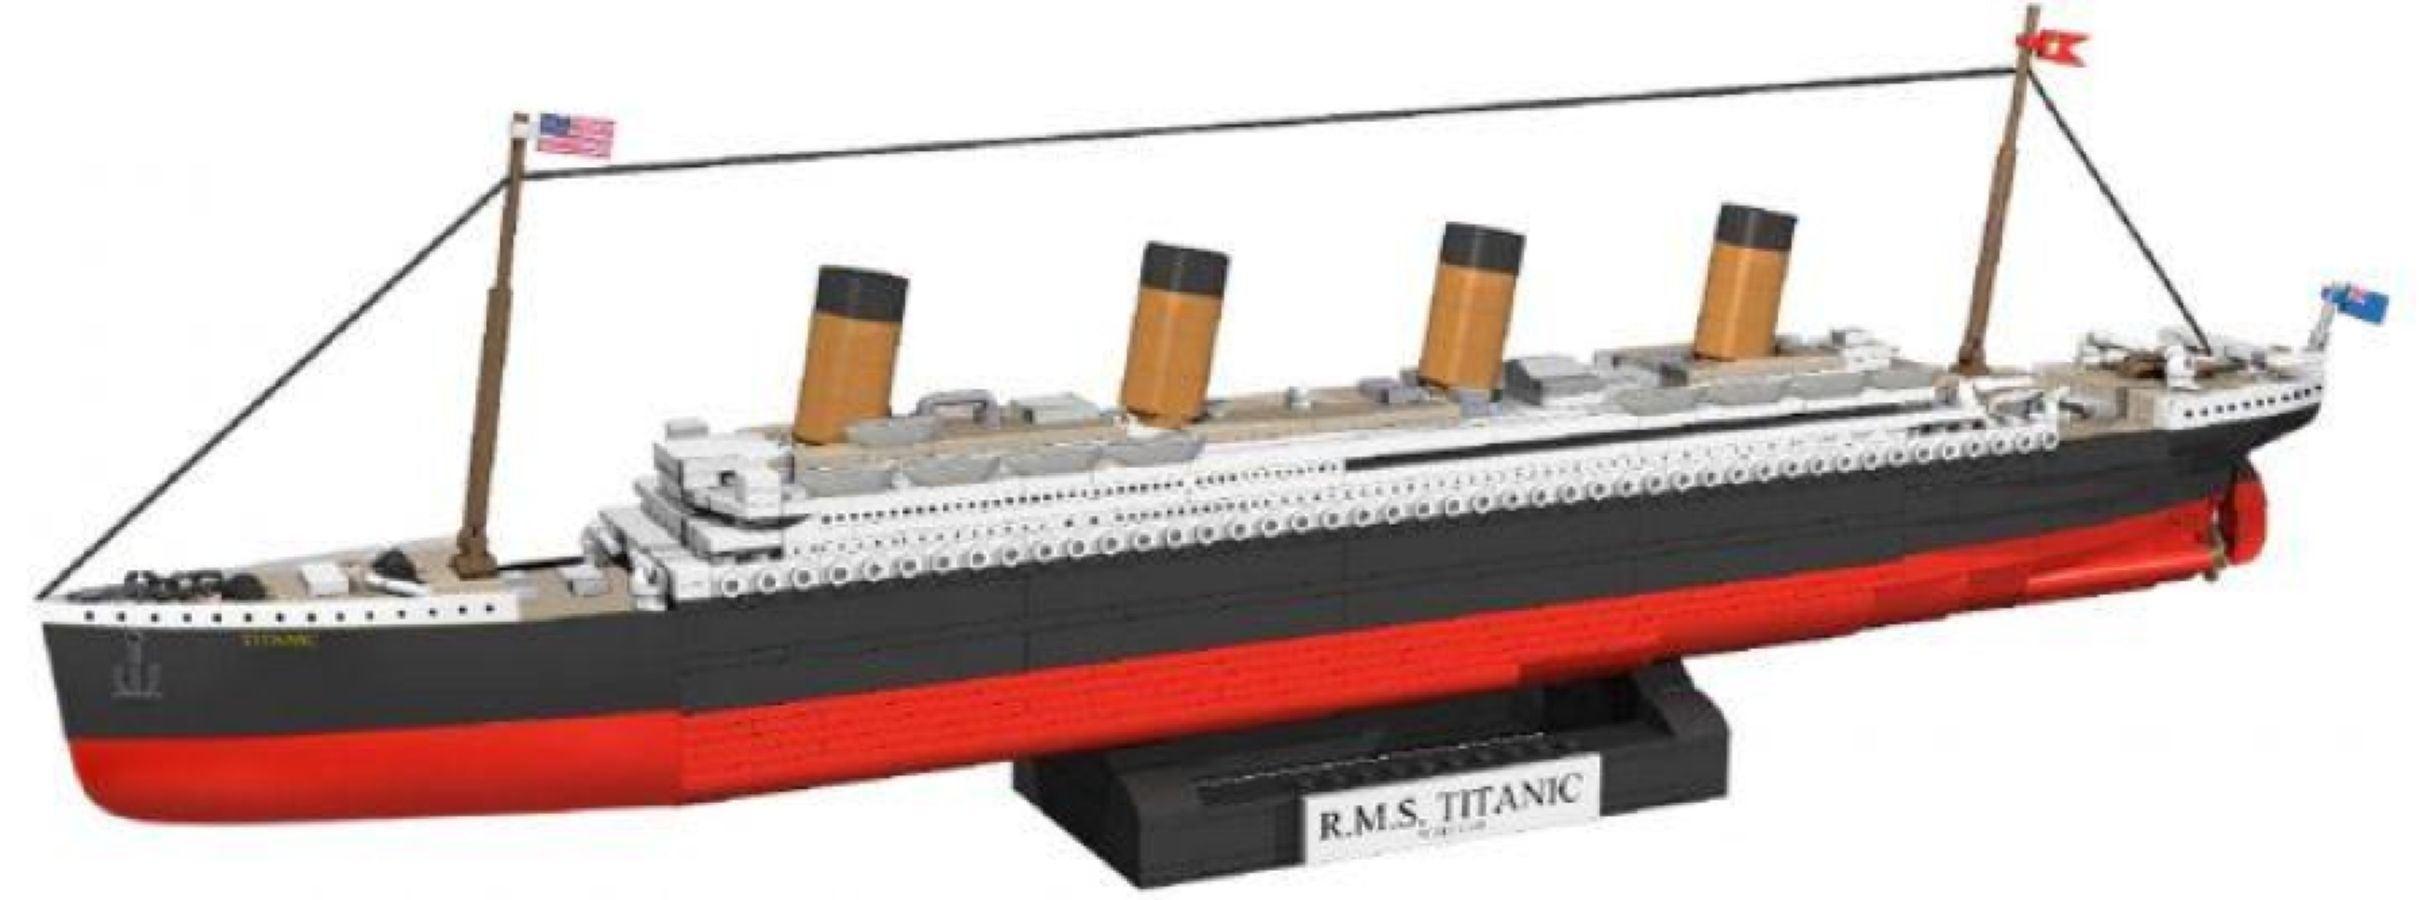 COB1928 Titanic - Titanic Exclusive Edition 1:450 Scale 960 piece - Cobi - Titan Pop Culture